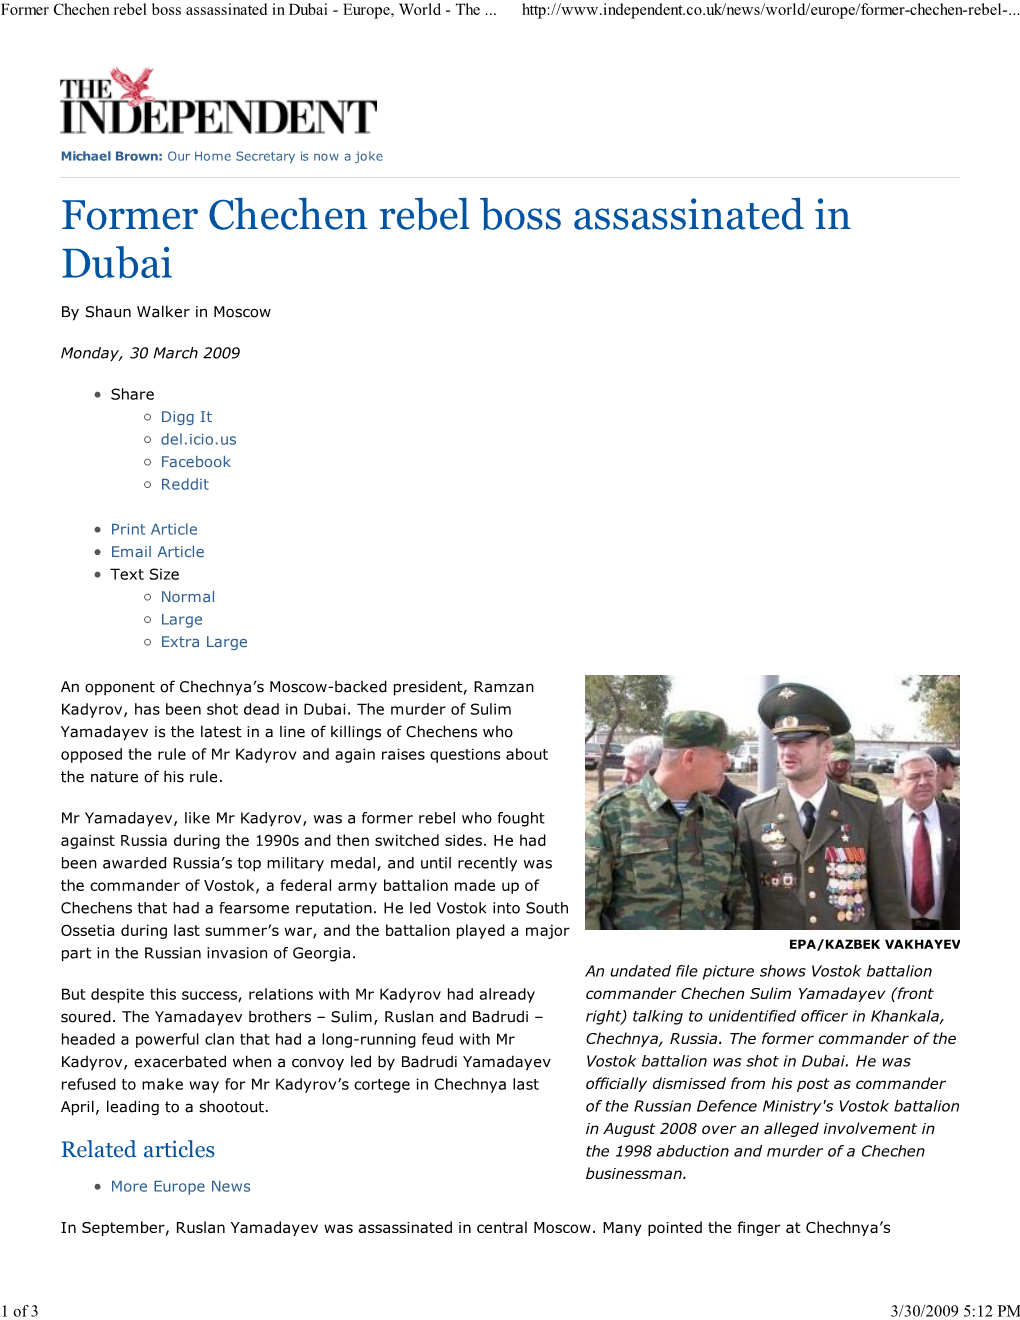 Former Chechen Rebel Boss A